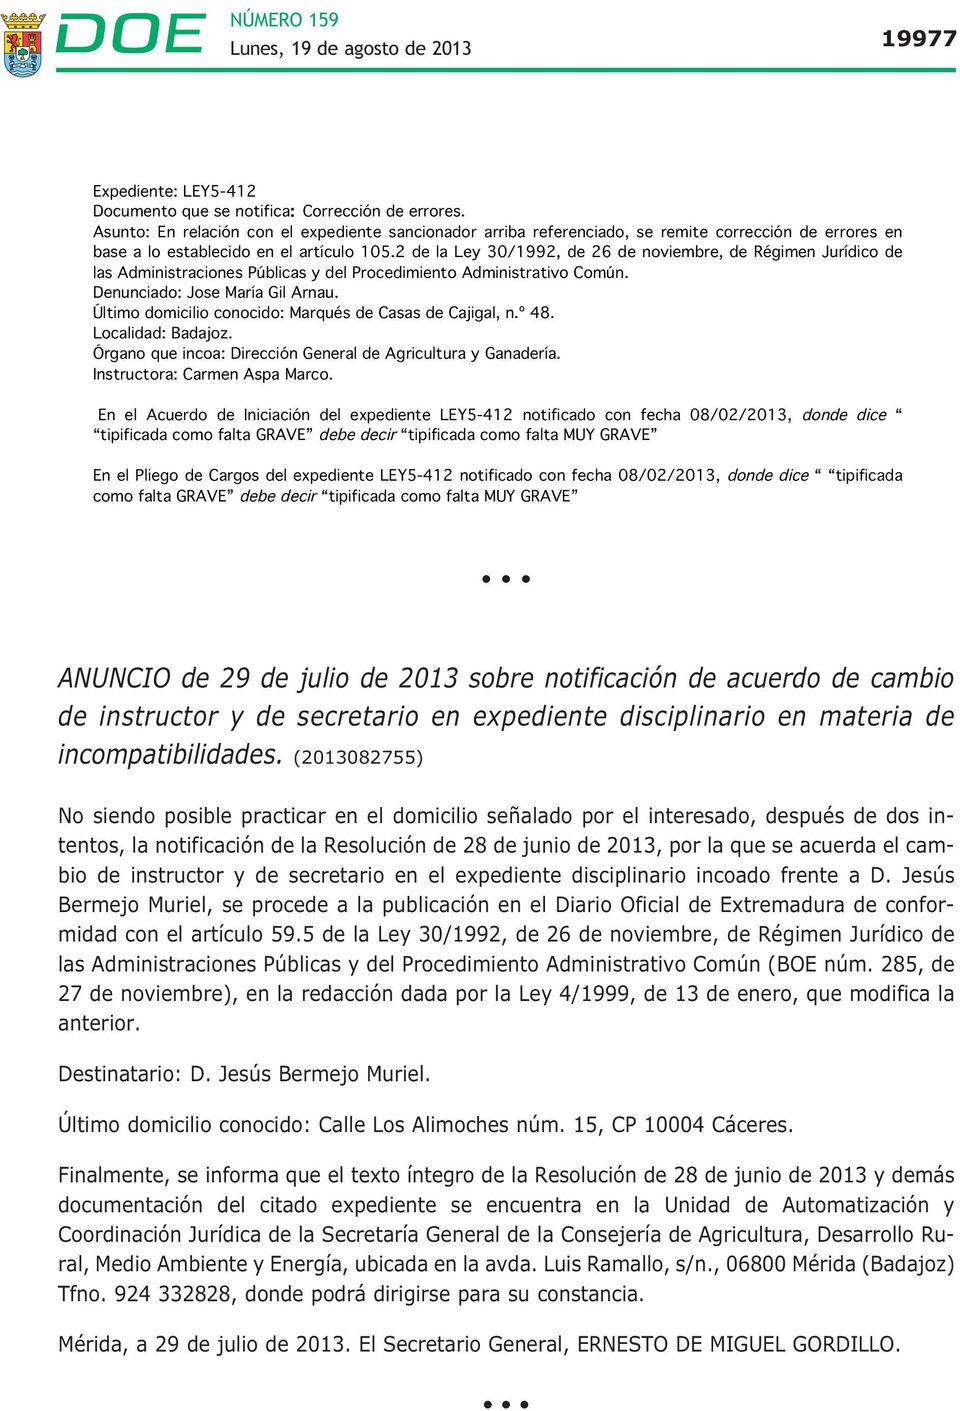 2 de la Ley 30/1992, de 26 de noviembre, de Régimen Jurídico de las Administraciones Públicas y del Procedimiento Administrativo Común. Denunciado: Jose María Gil Arnau.